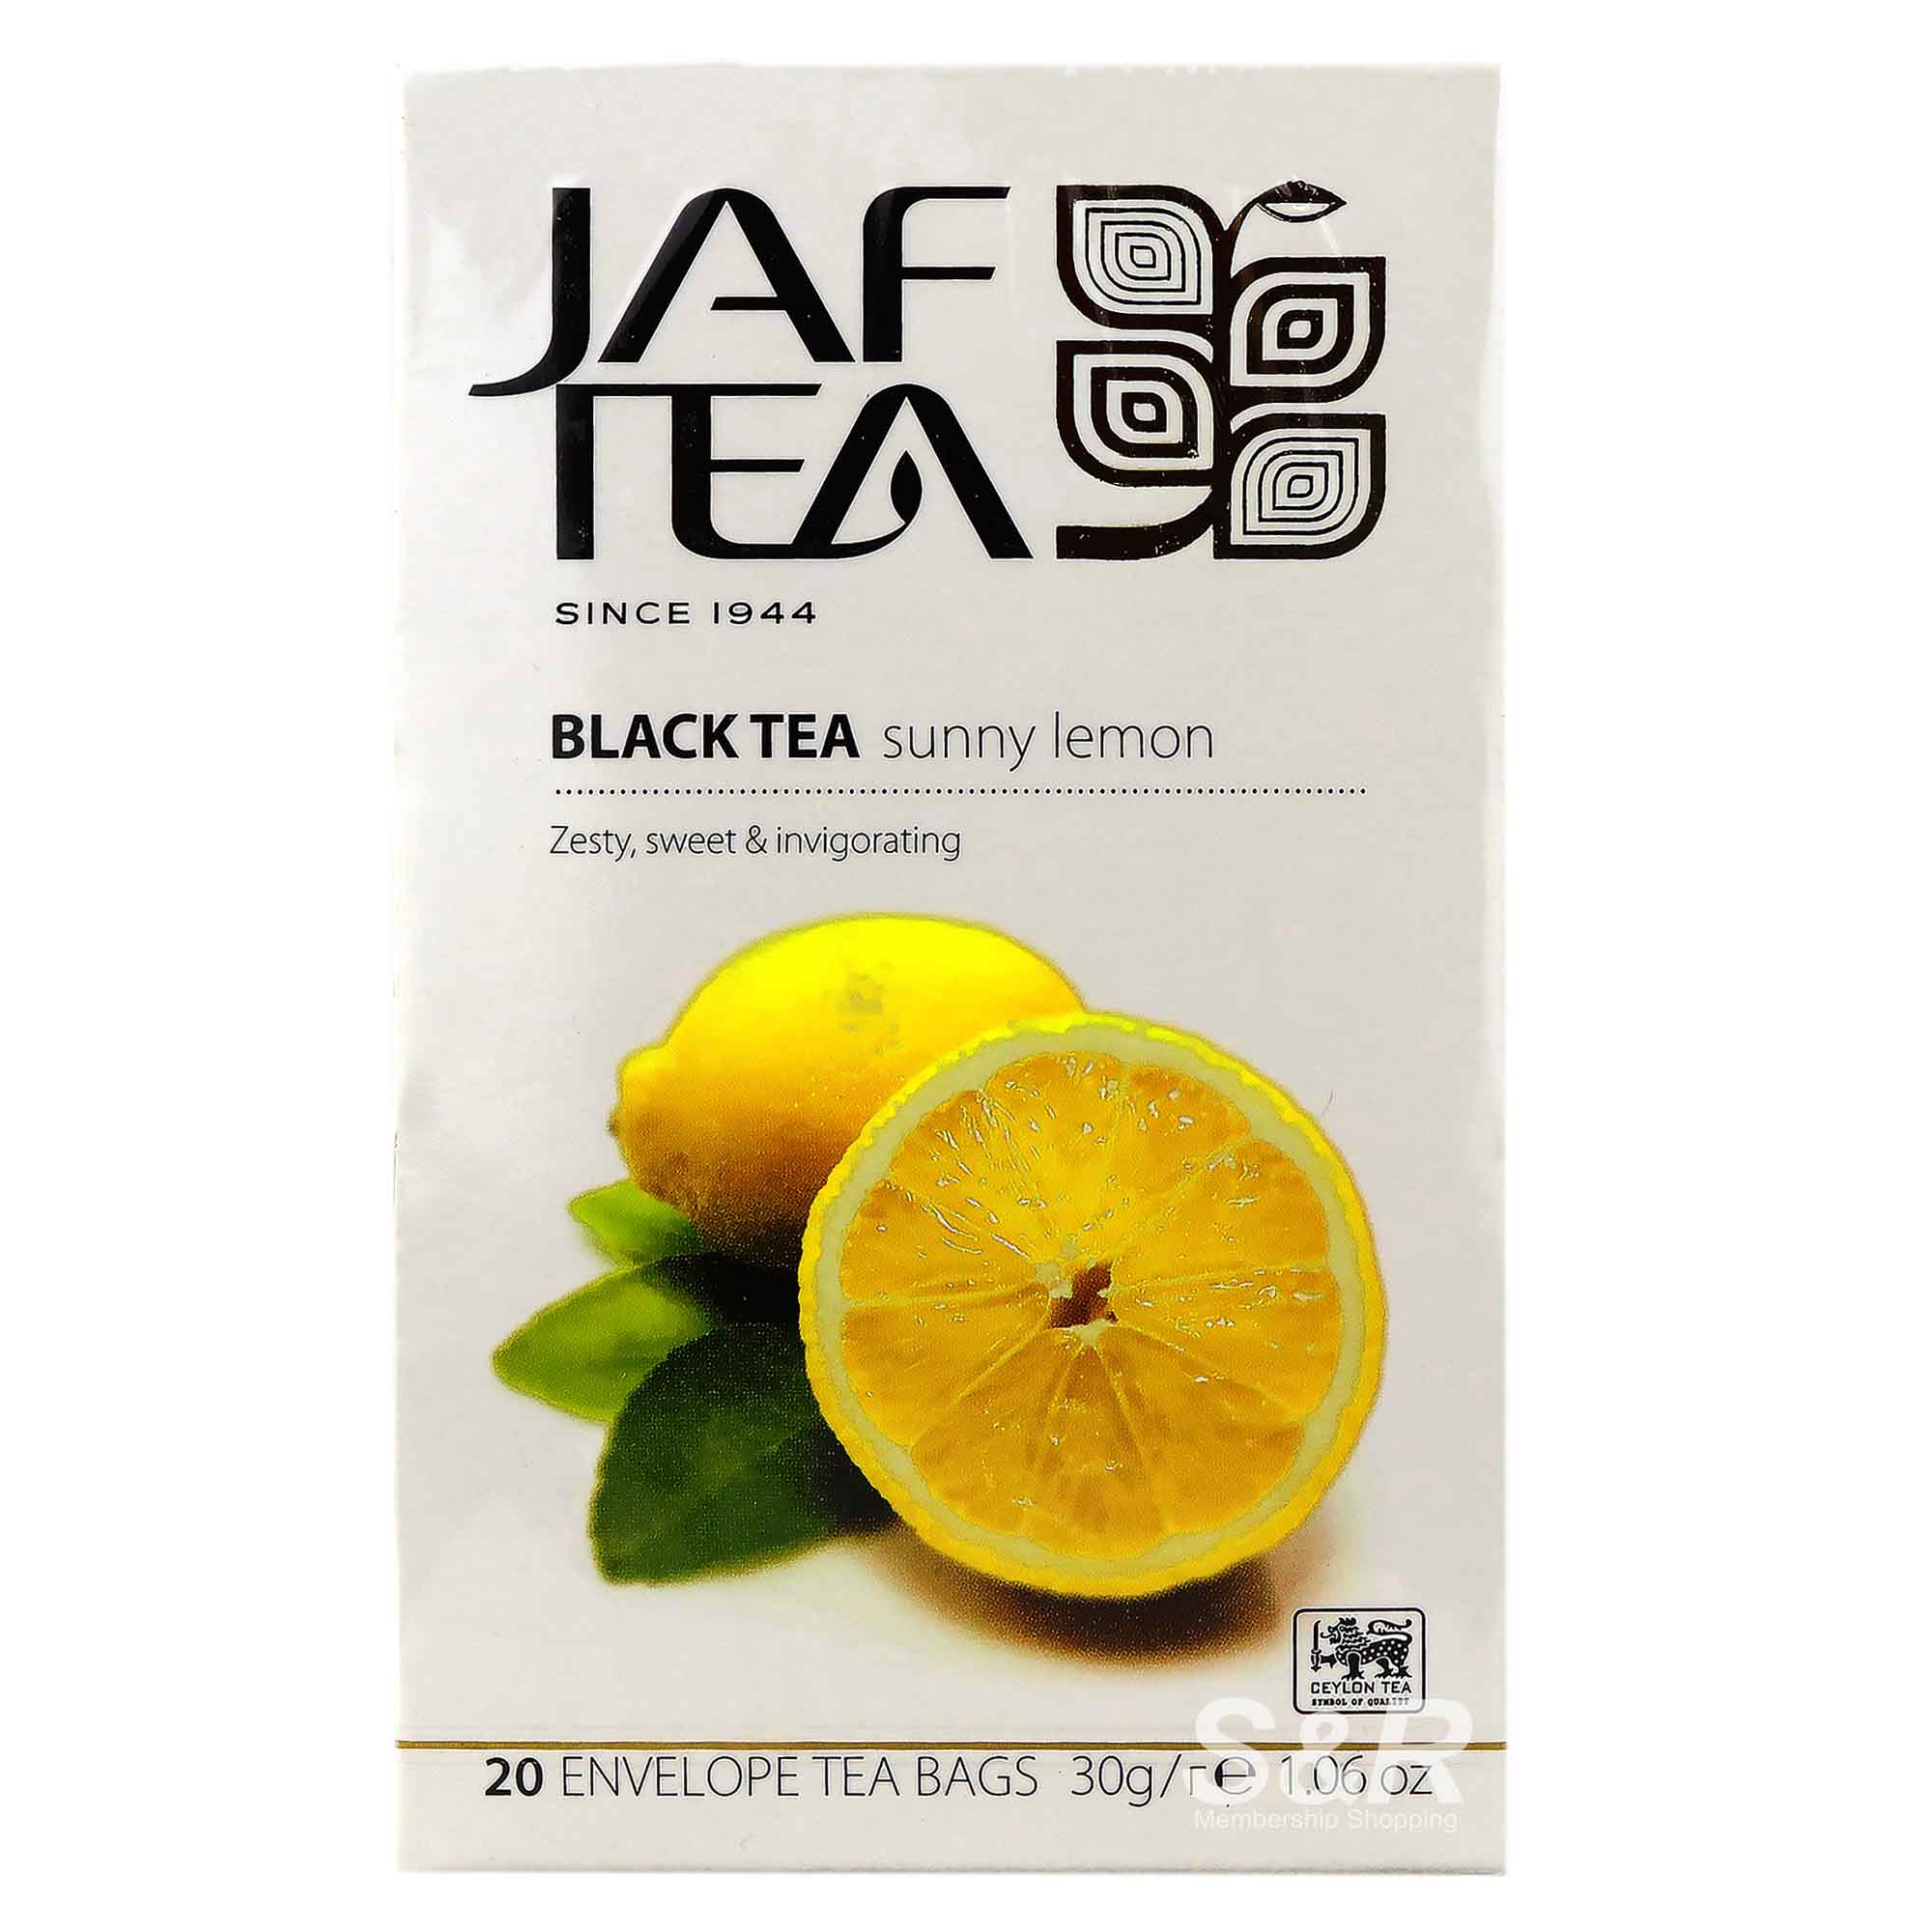 Jaf Tea Black Tea Sunny Lemon 20 tea bags